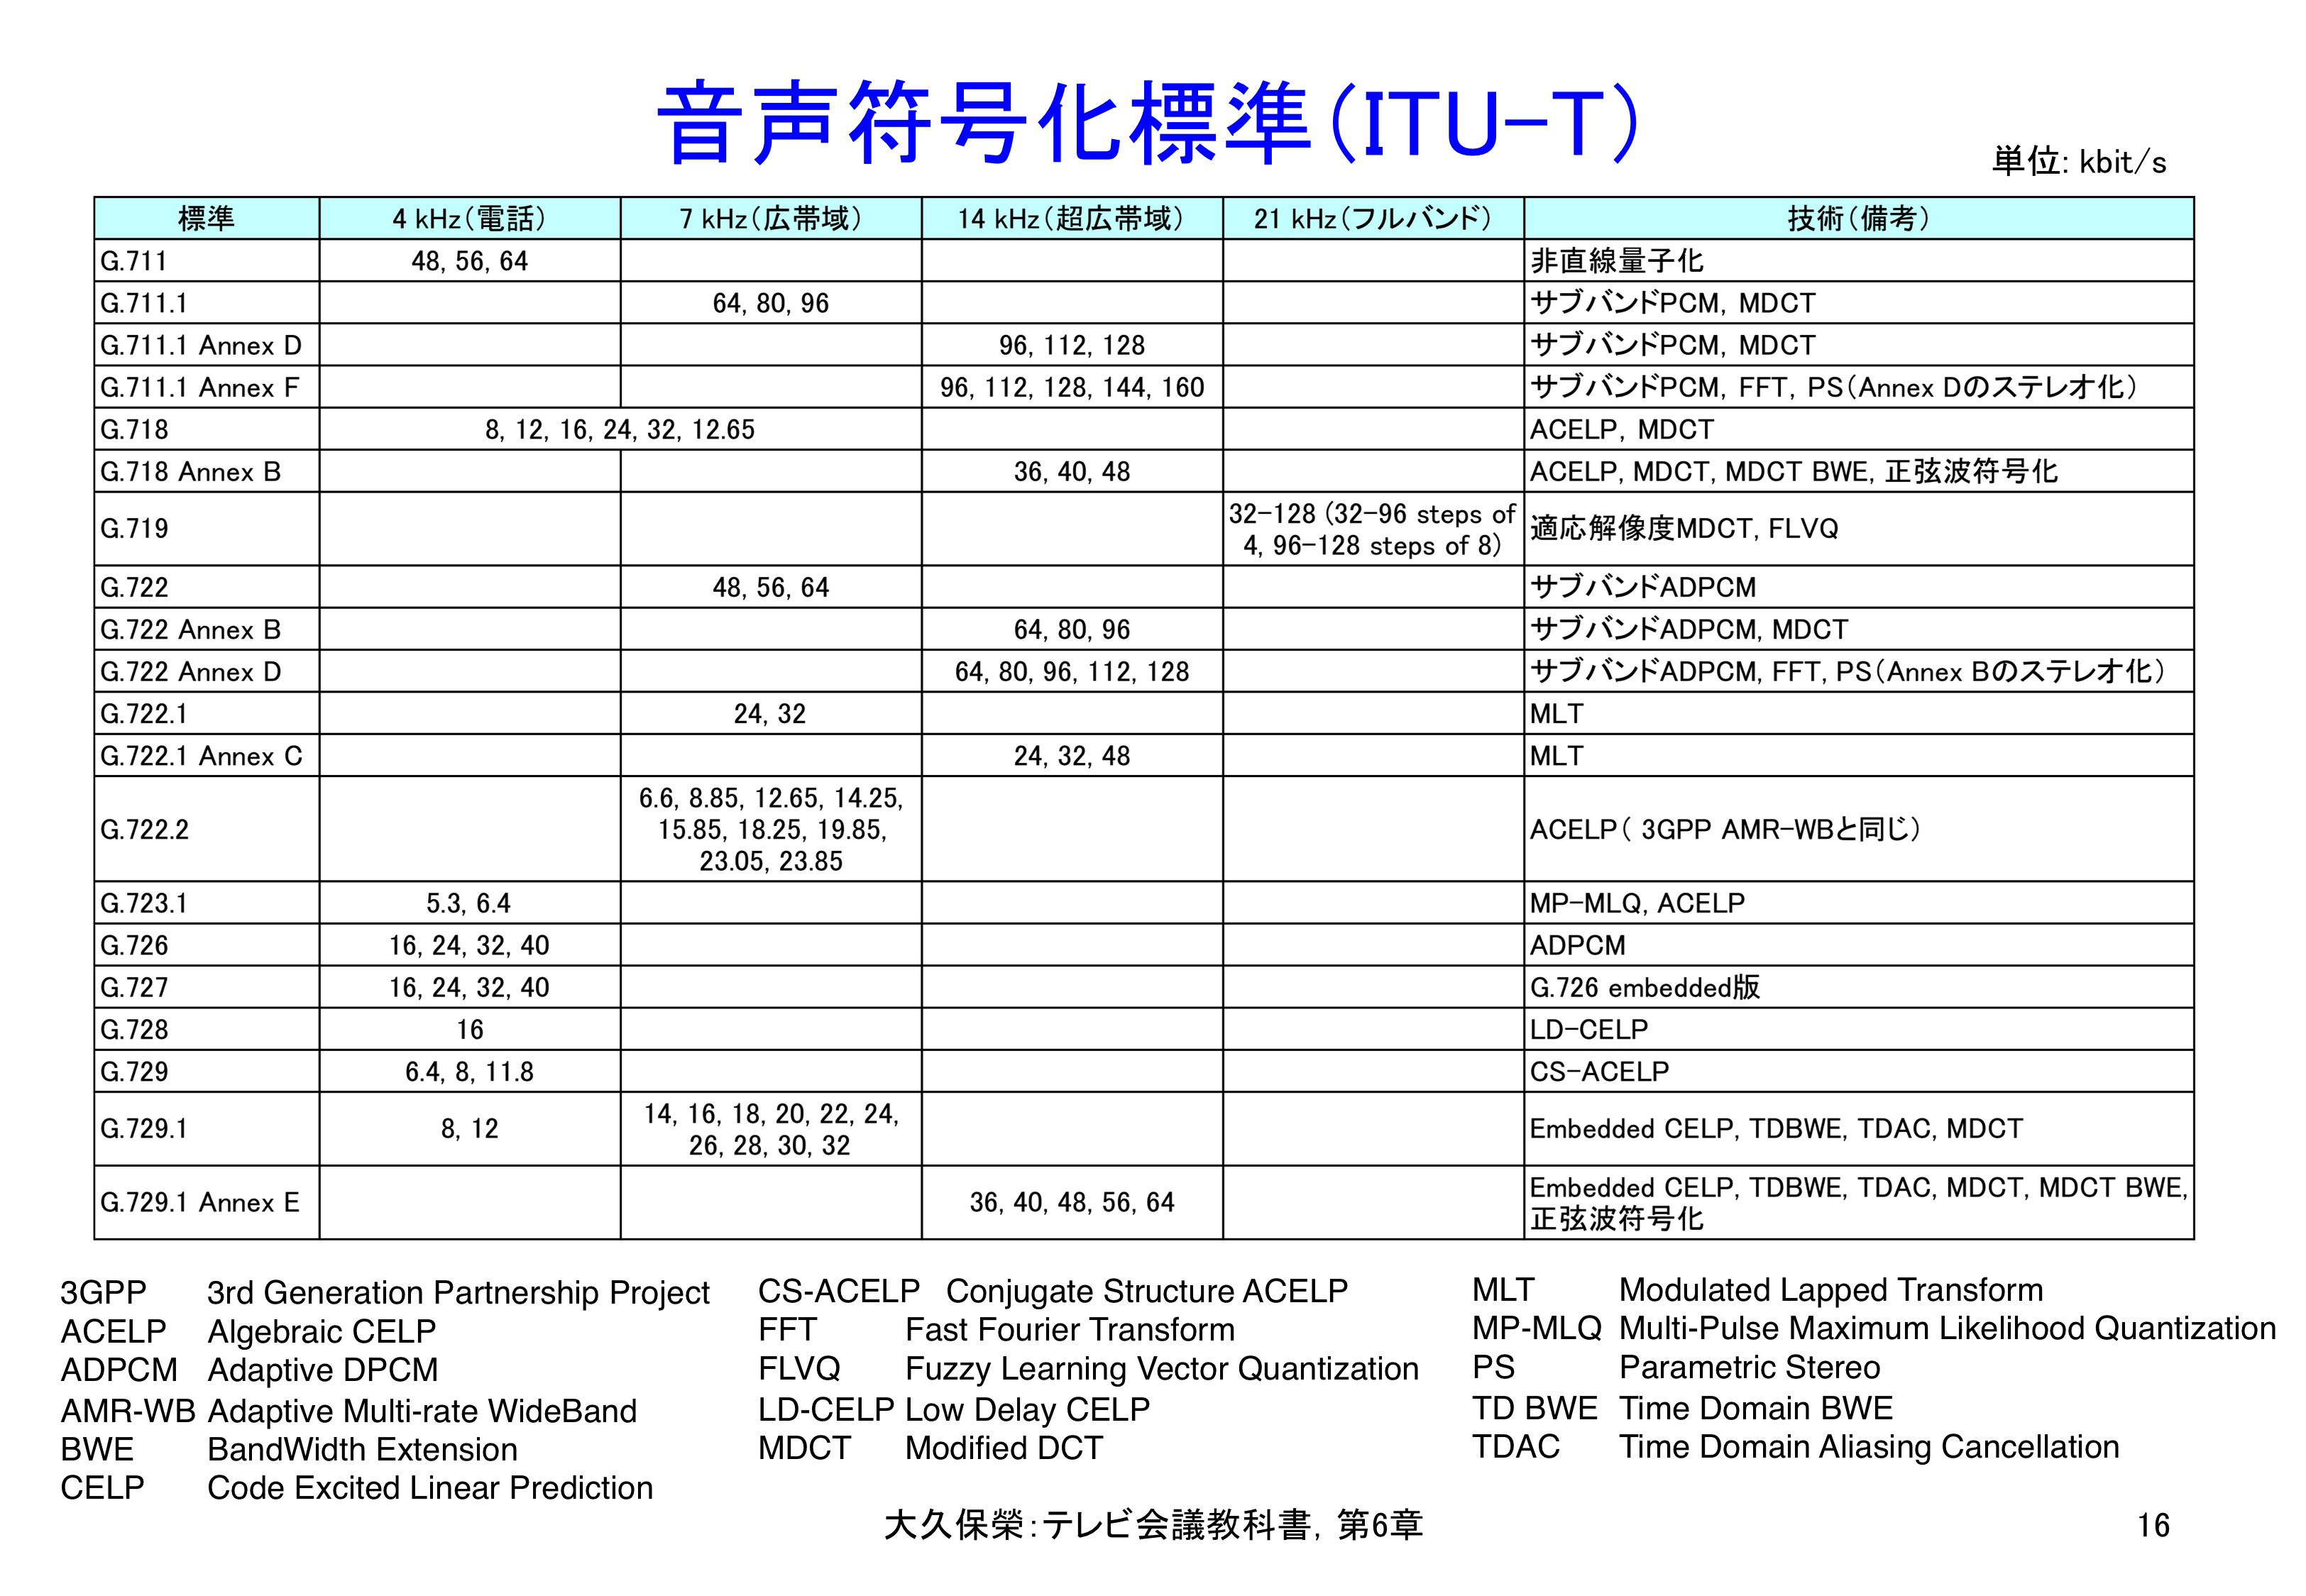 図6-16 ITU-Tの音声符号化標準